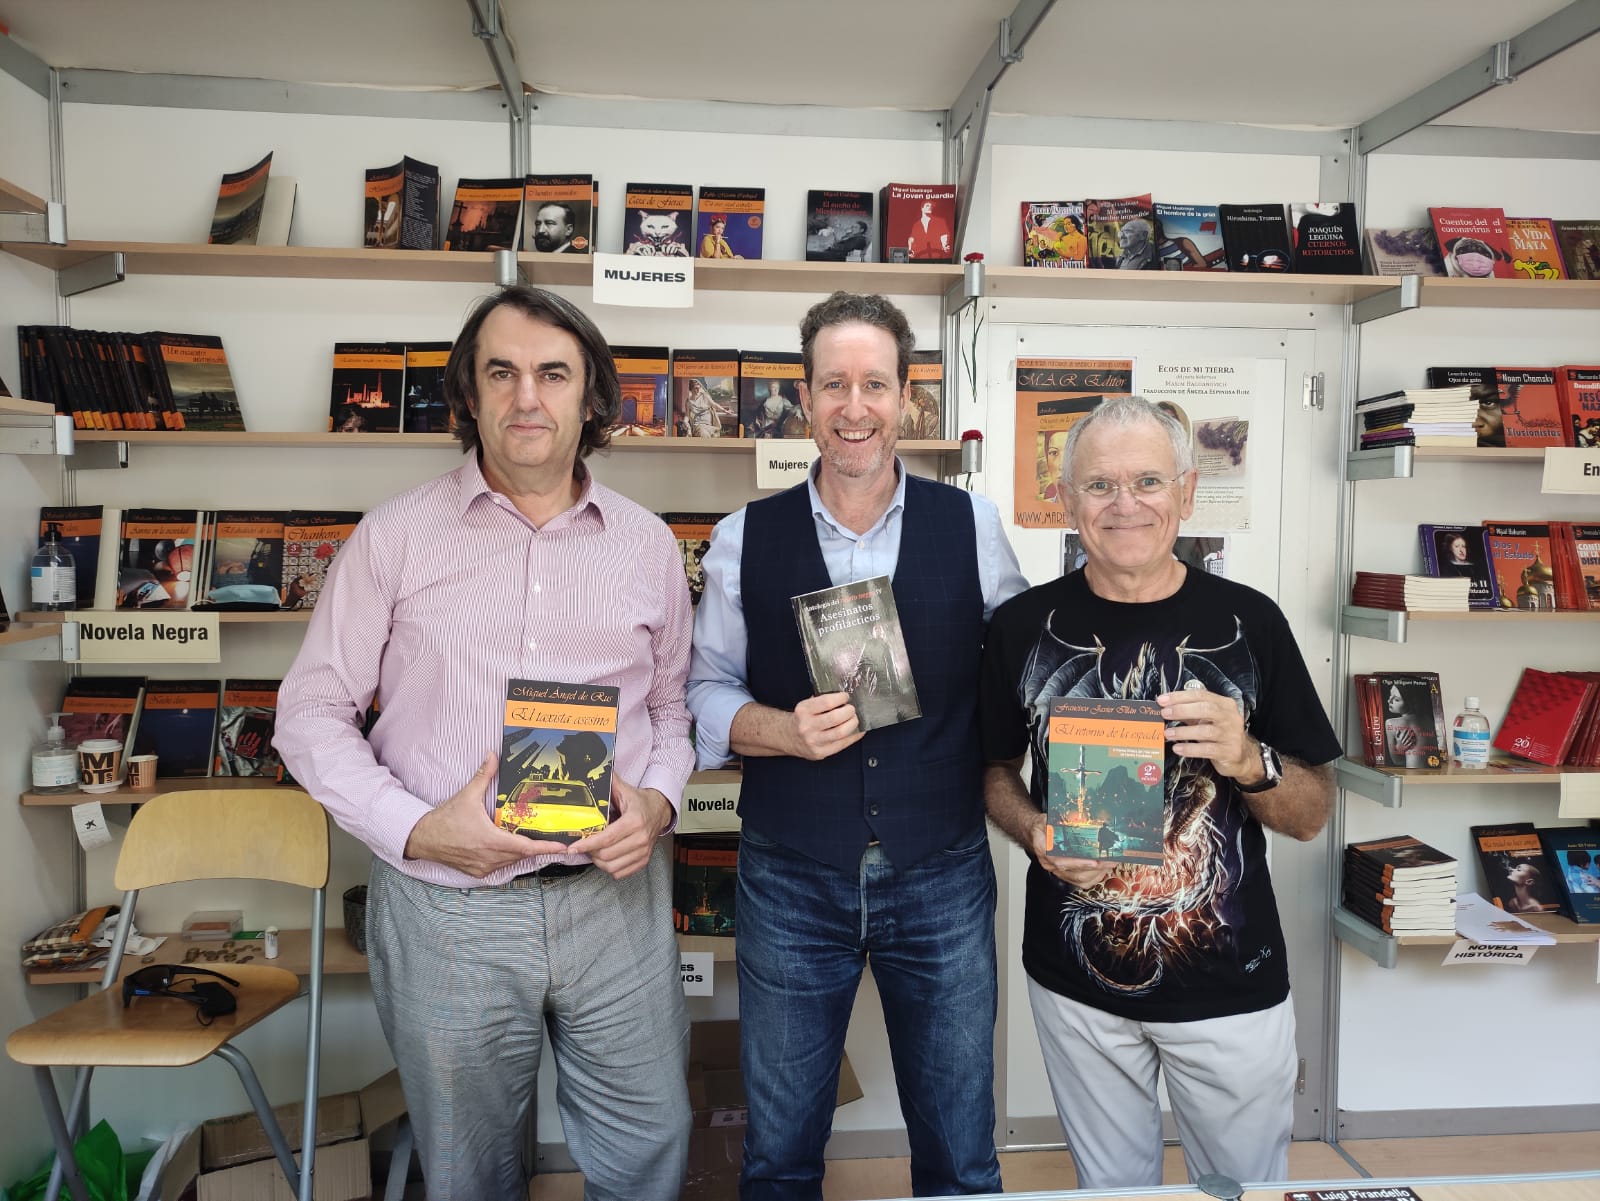 Rus en la Feria del Libro de Murcia con Jerónimo Tristante y Francisco Javier Illán Vivas